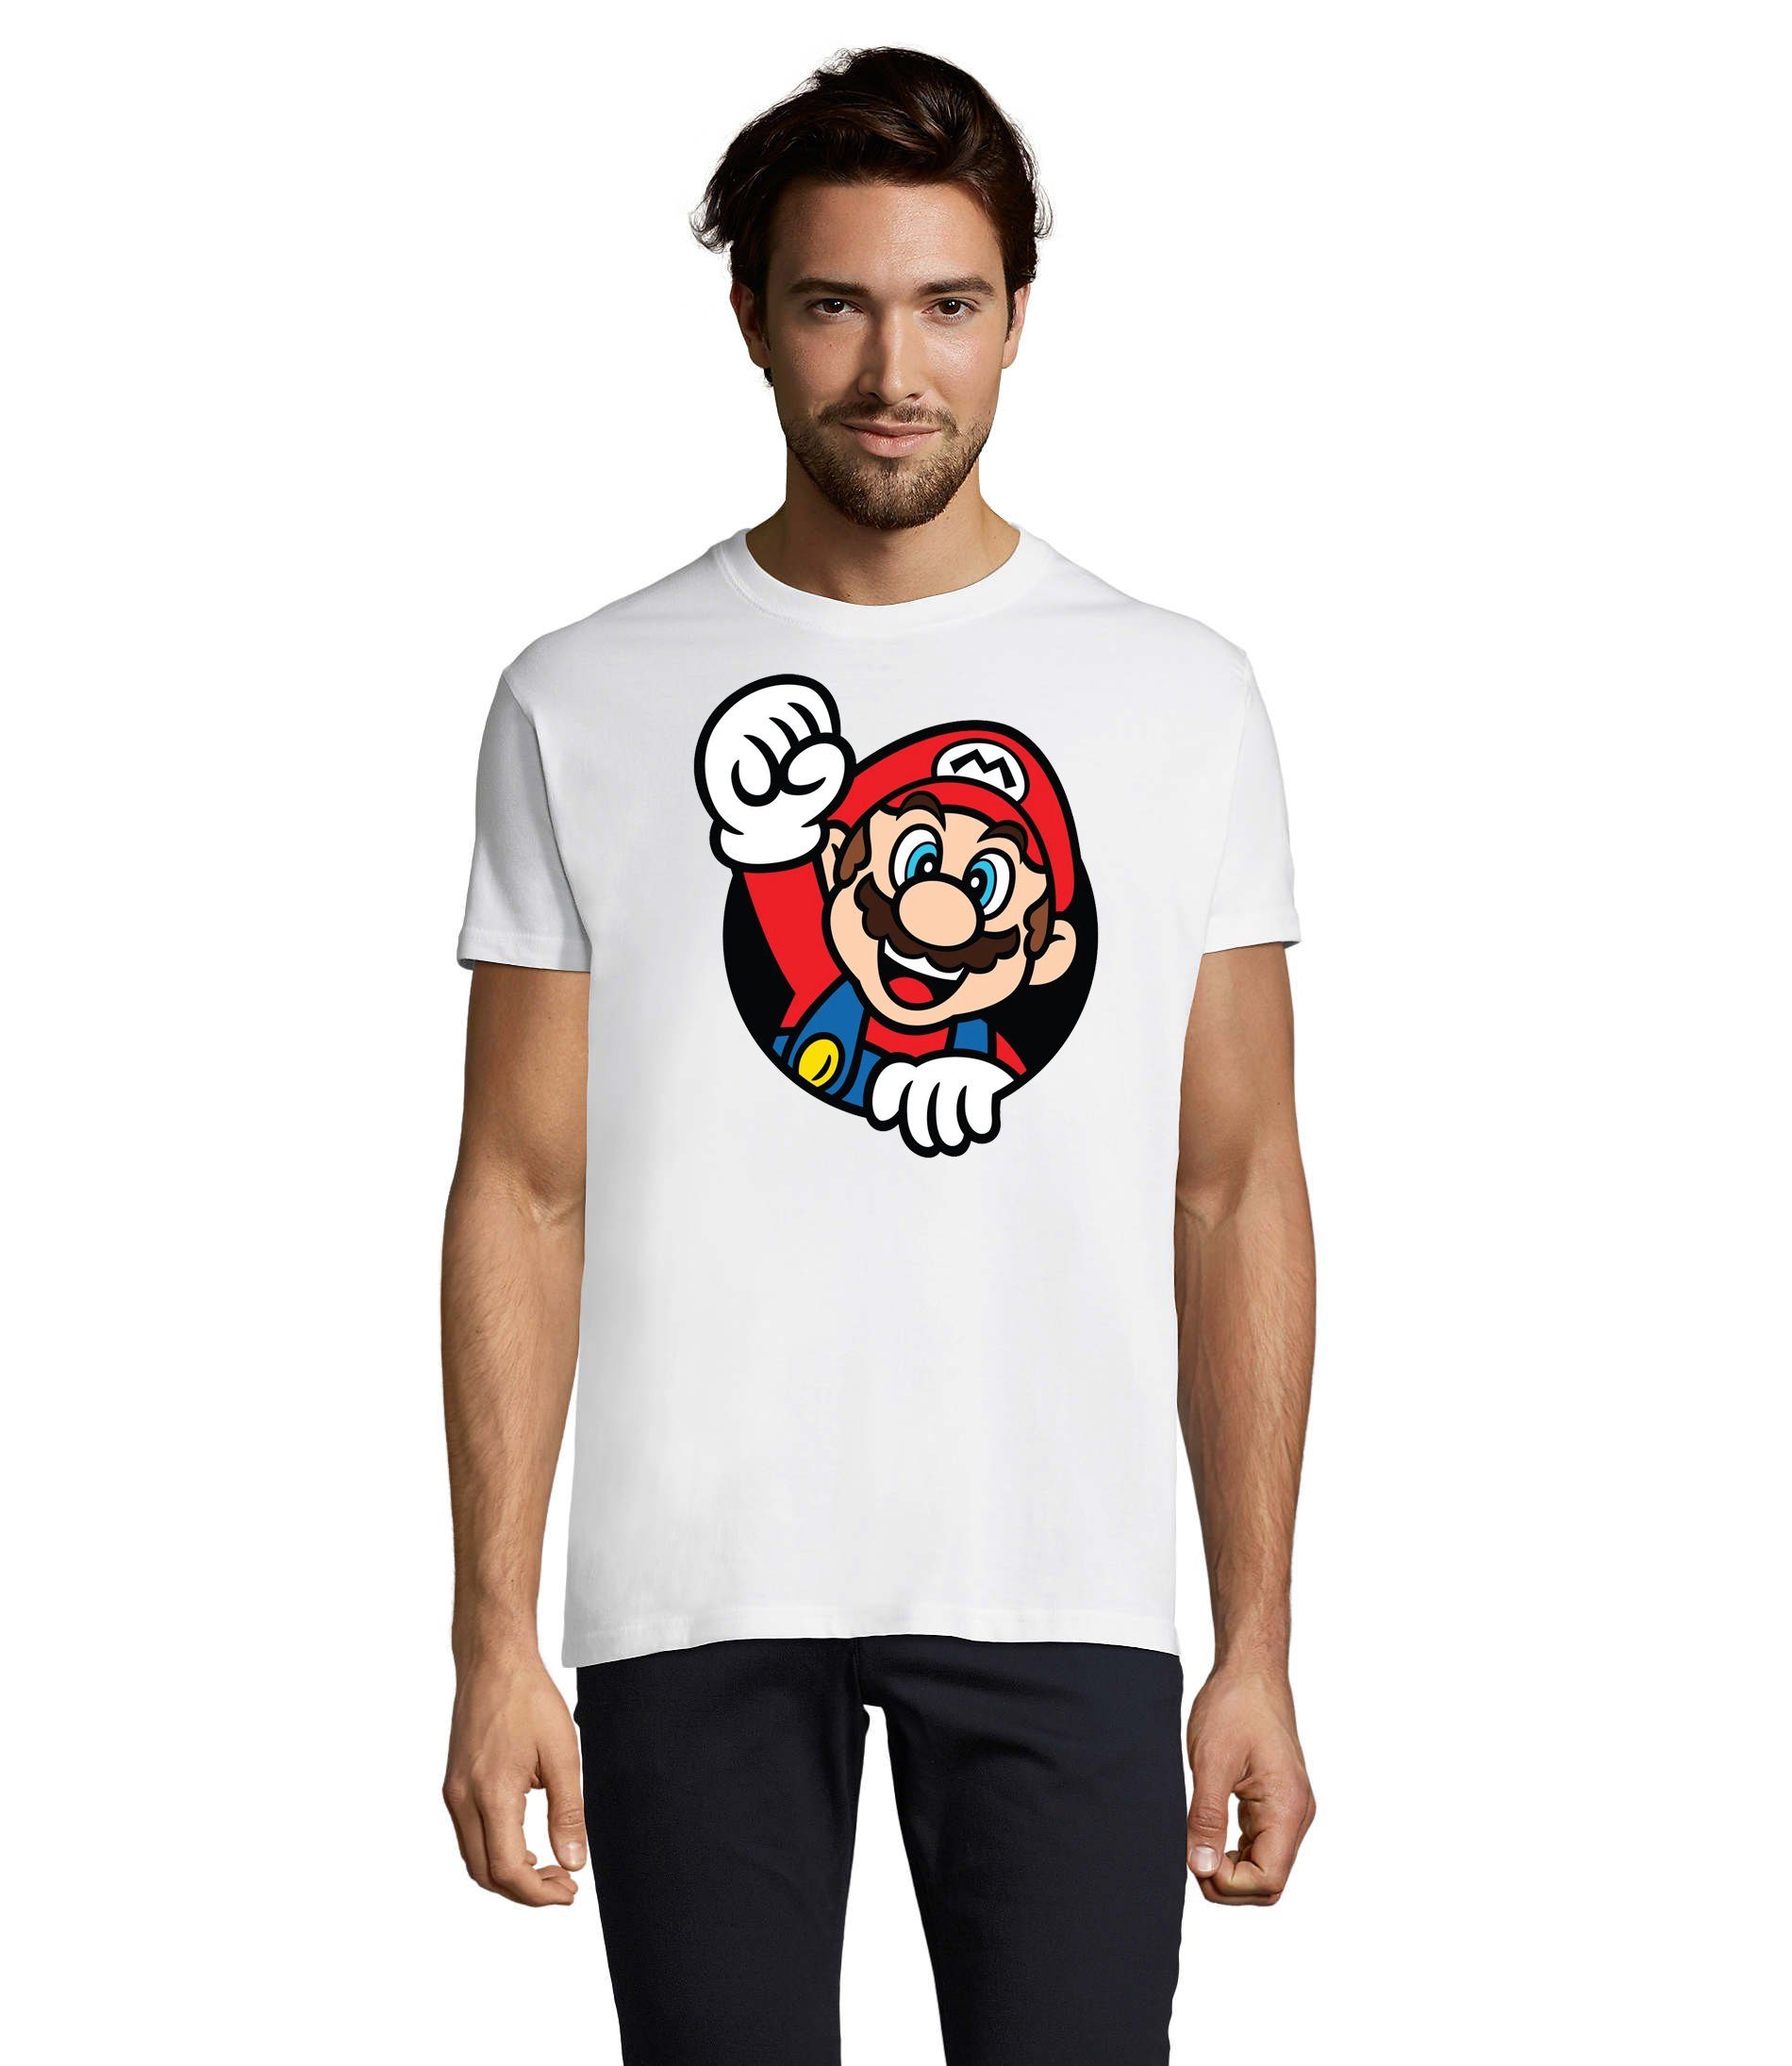 Blondie & Brownie T-Shirt Herren Super Mario Faust Nerd Konsole Gaming Spiel Nintendo Weiss